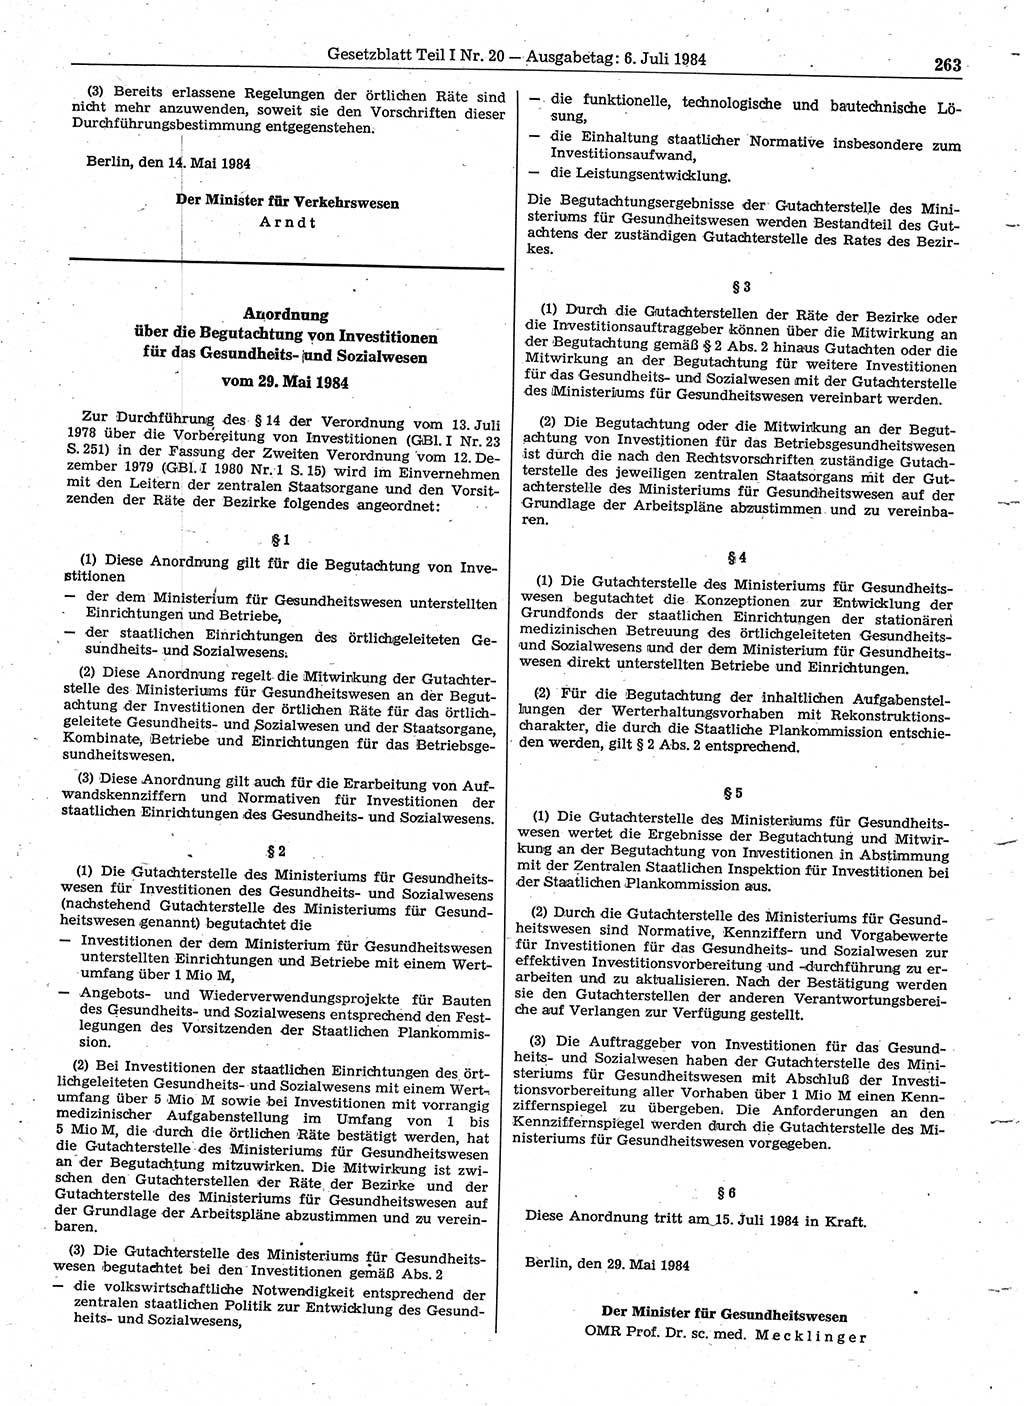 Gesetzblatt (GBl.) der Deutschen Demokratischen Republik (DDR) Teil Ⅰ 1984, Seite 263 (GBl. DDR Ⅰ 1984, S. 263)